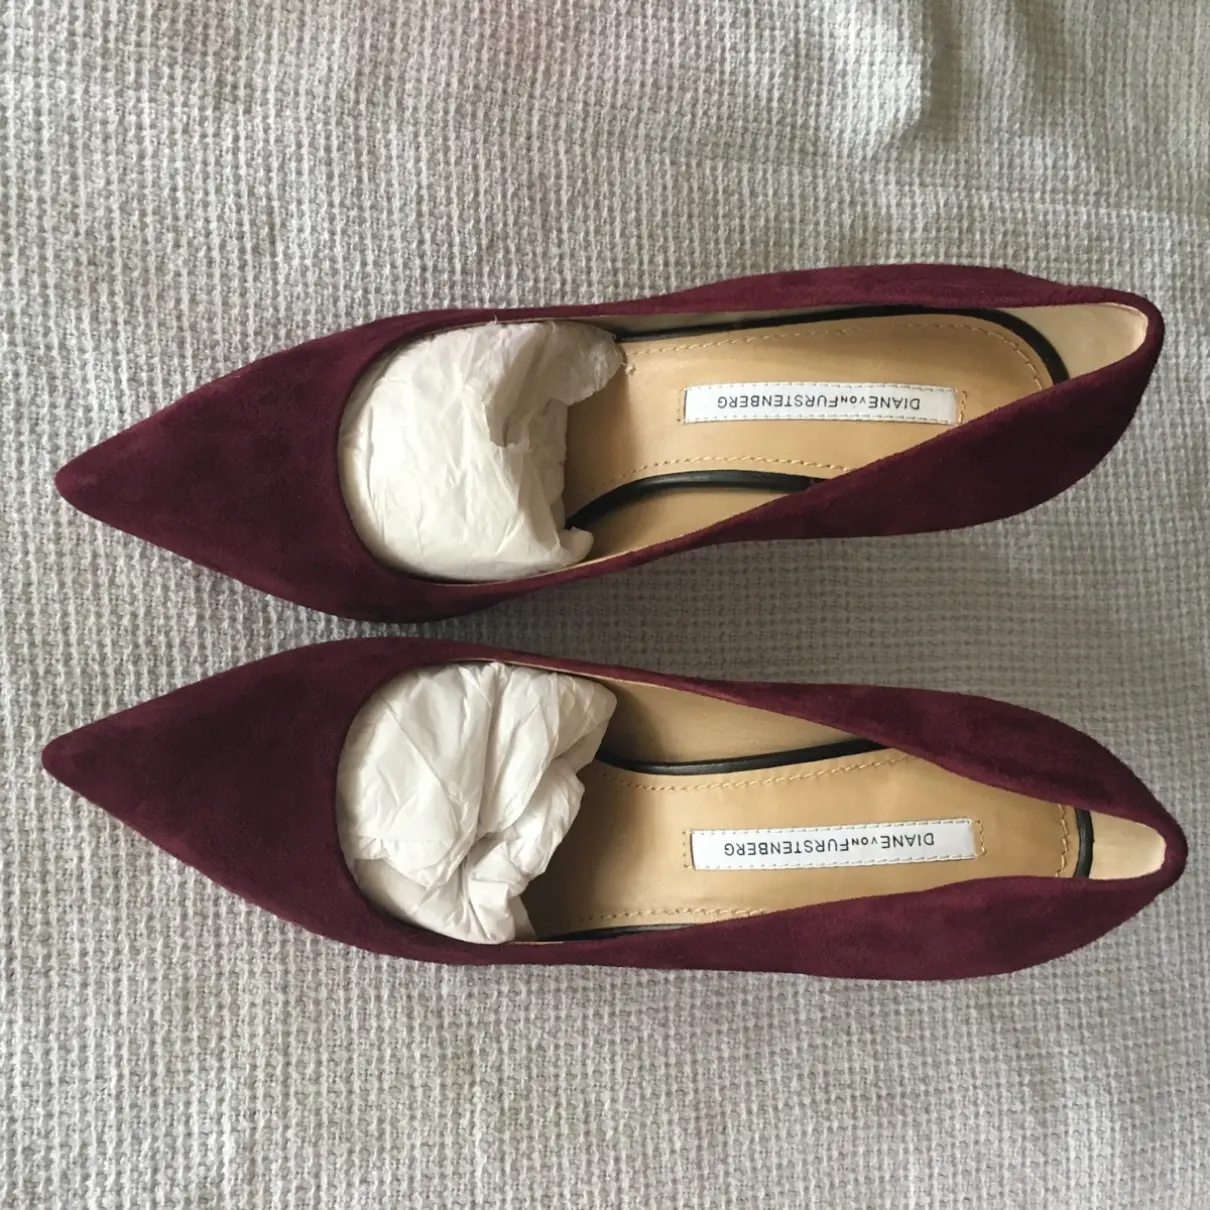 Diane Von Furstenberg Heels for sale